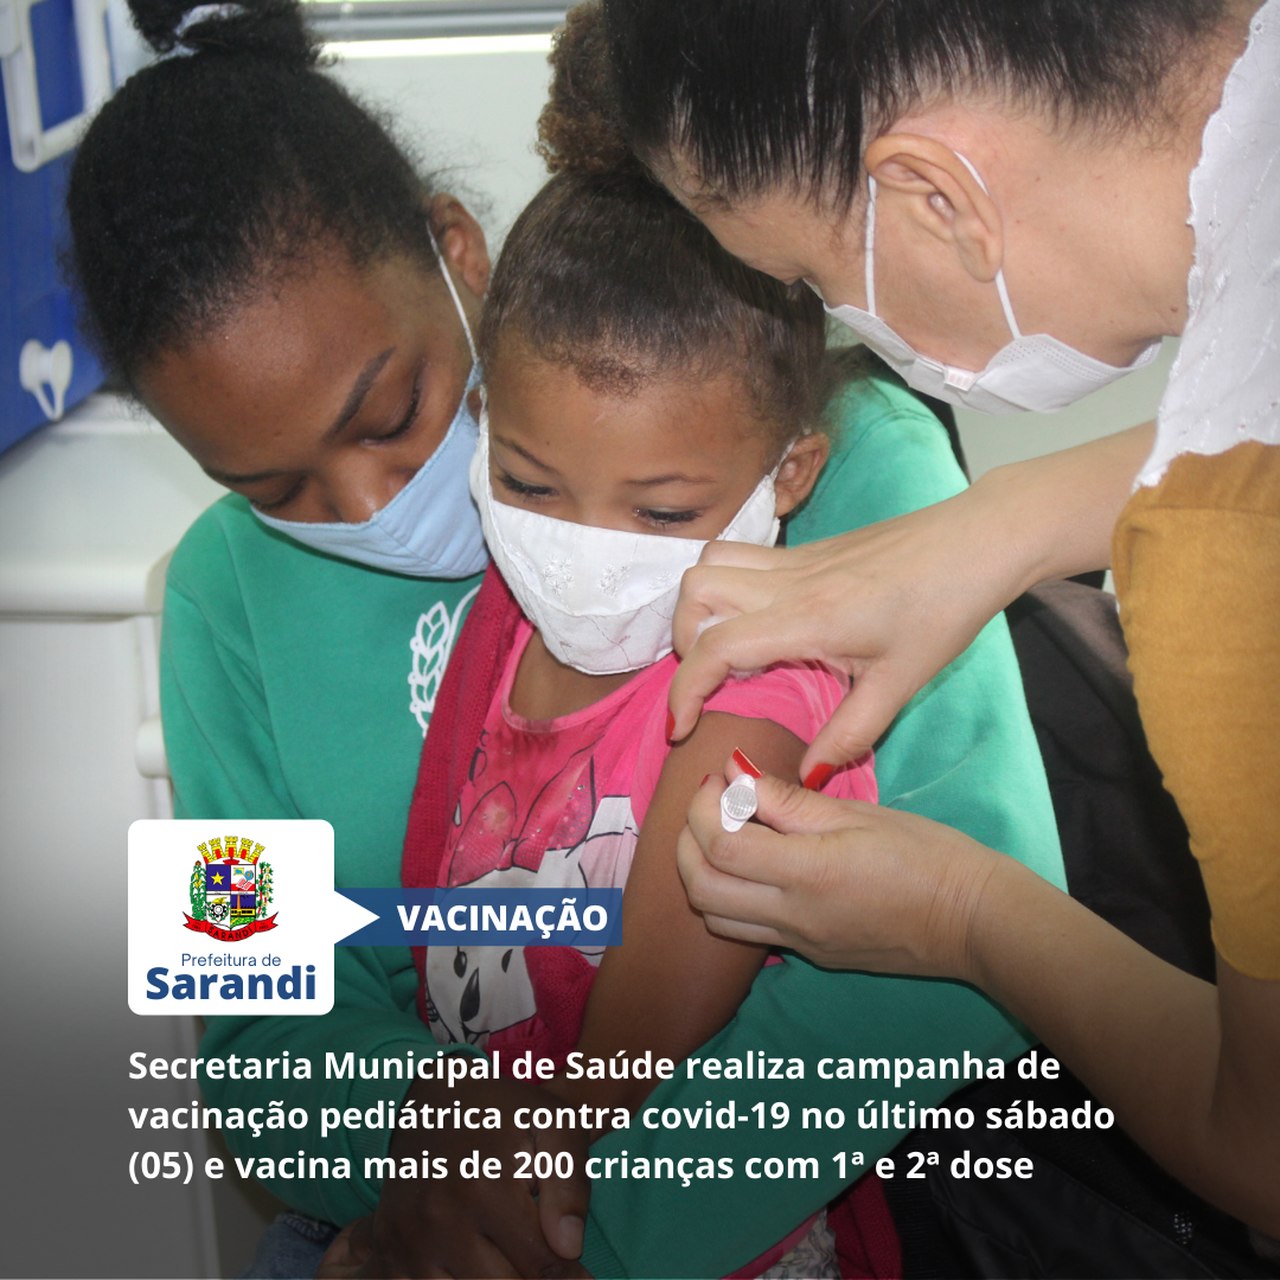 Secretaria Municipal de Saúde realiza campanha de vacinação pediátrica contra covid-19 no último sábado (05) e vacina mais de 200 crianças com 1ª e 2ª dose